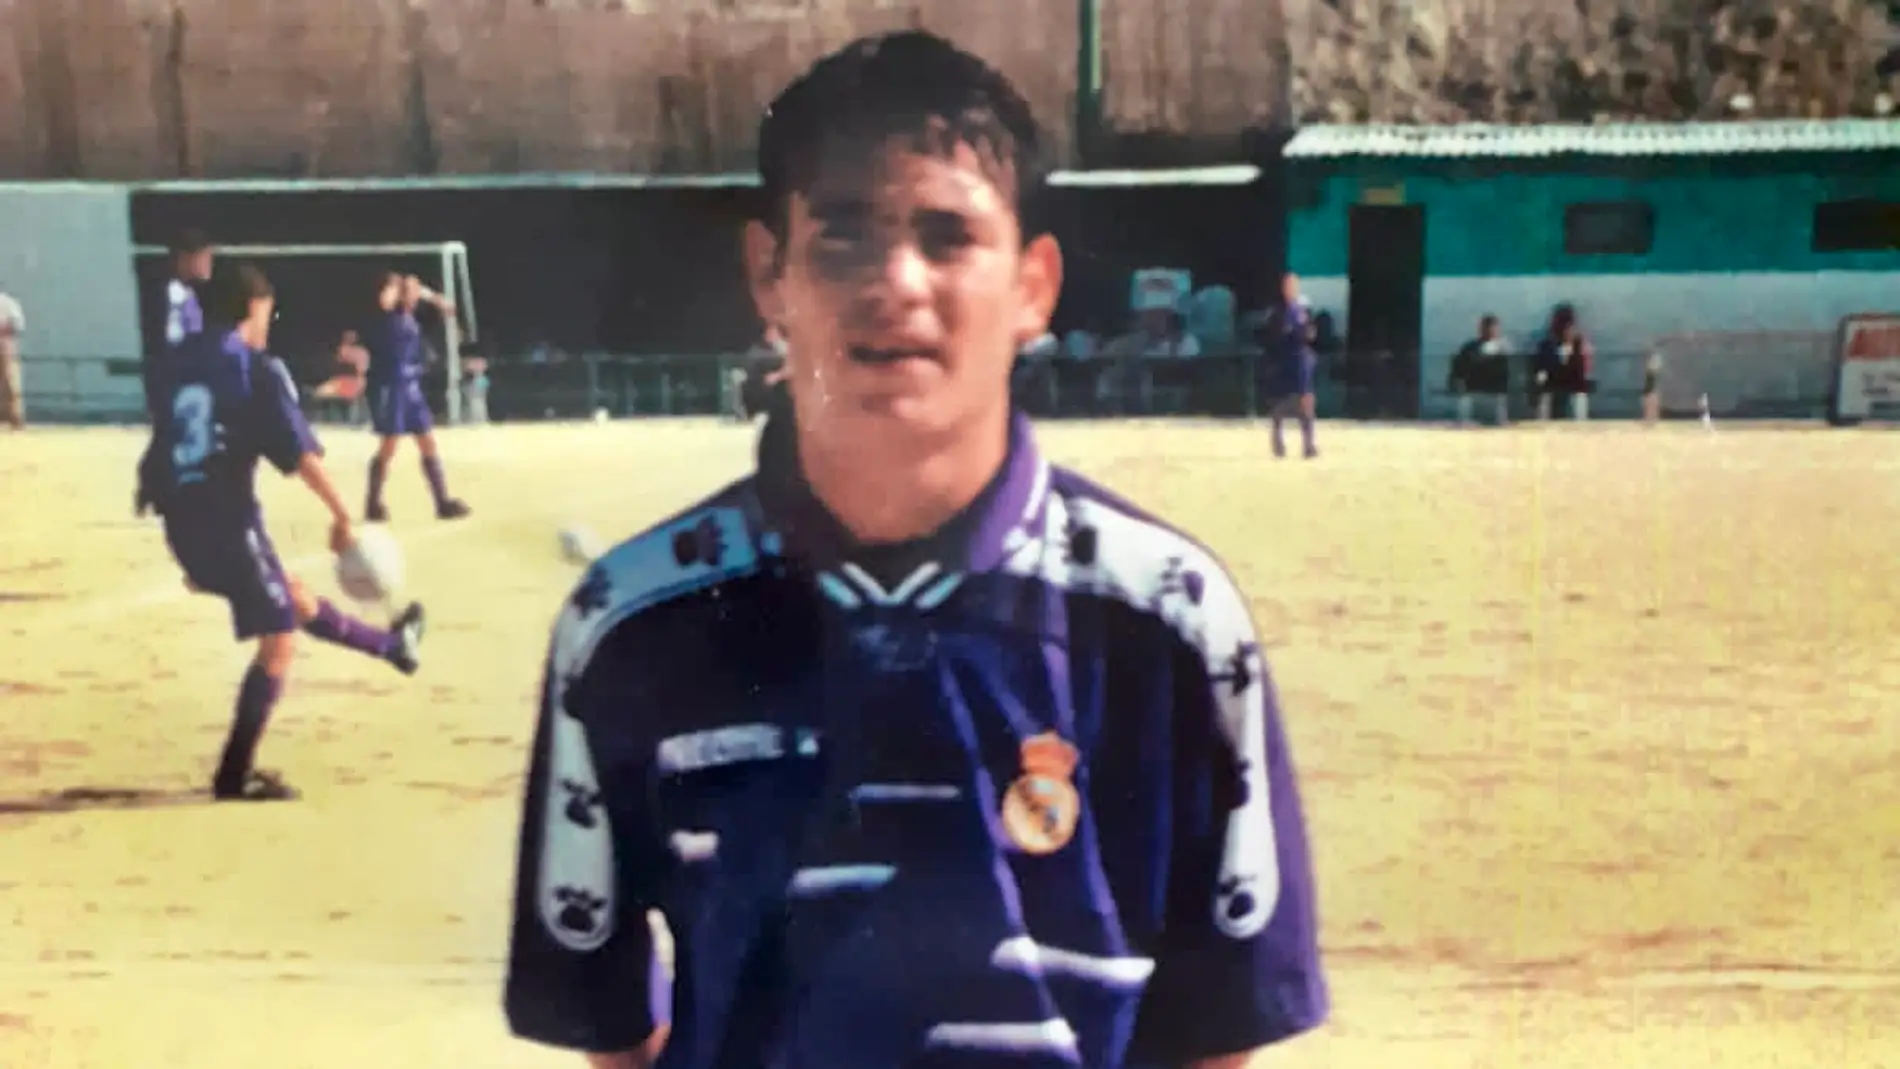 Nino fue canterano del Real Madrid durante dos años, en Cadete y Juvenil, justo antes de firmar por el Elche CF.